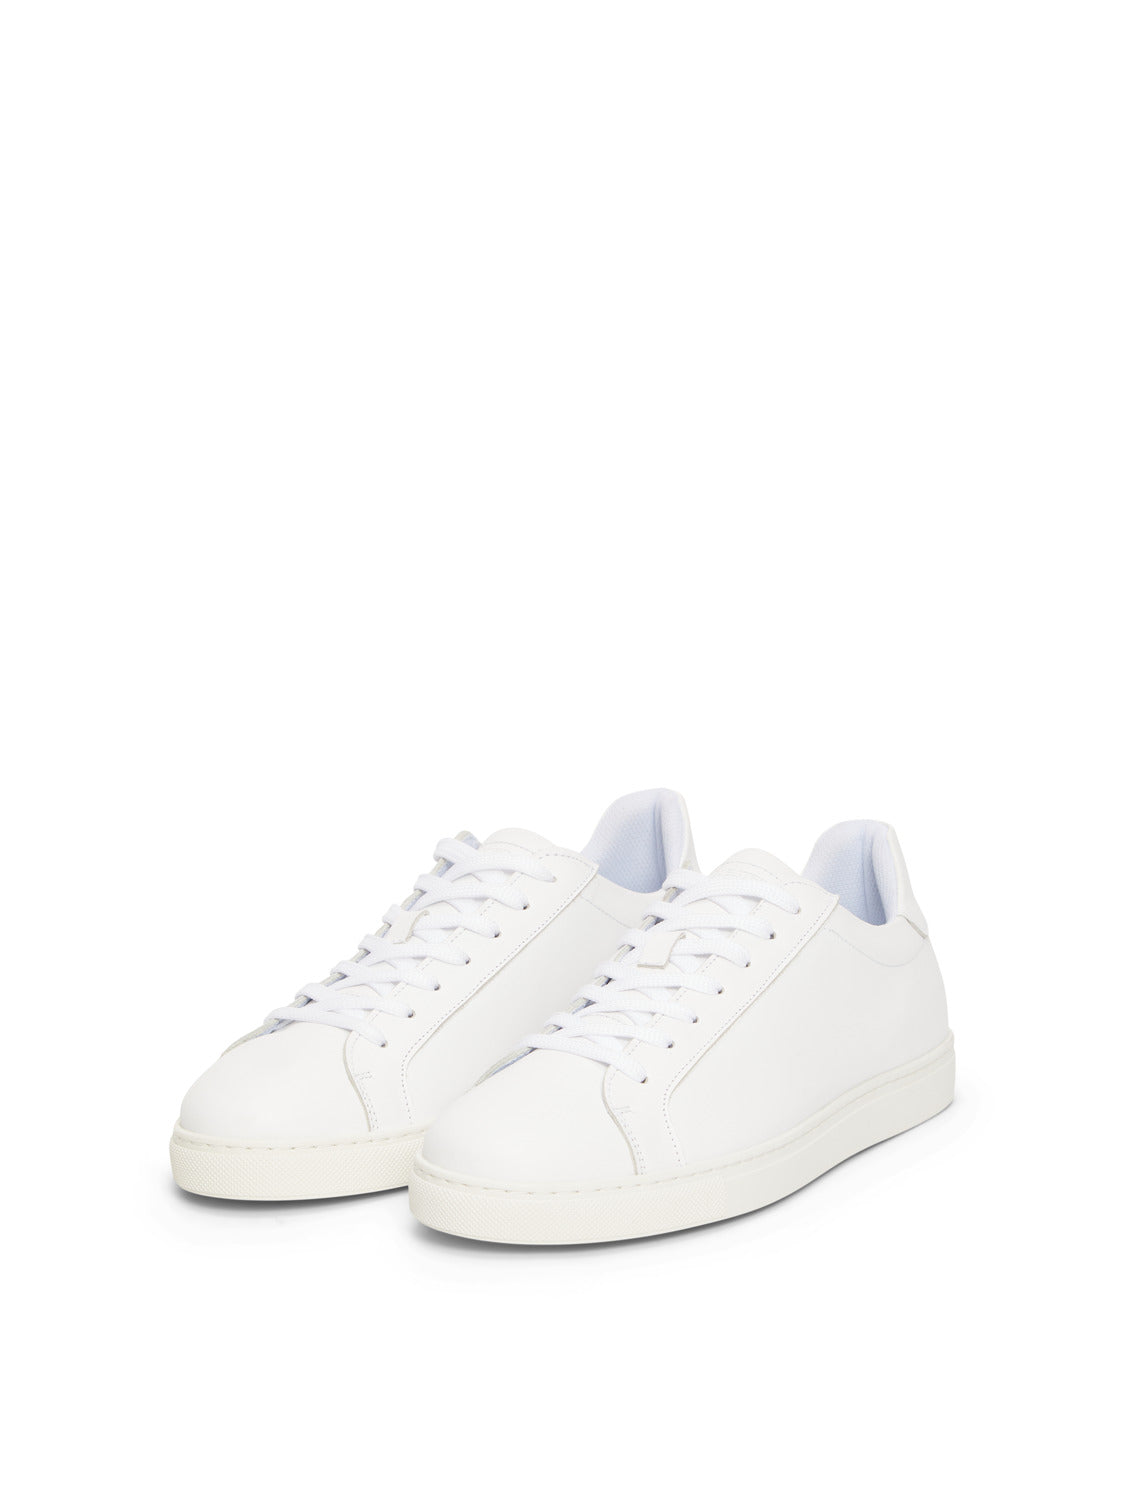 SLHEVAN Shoes - White